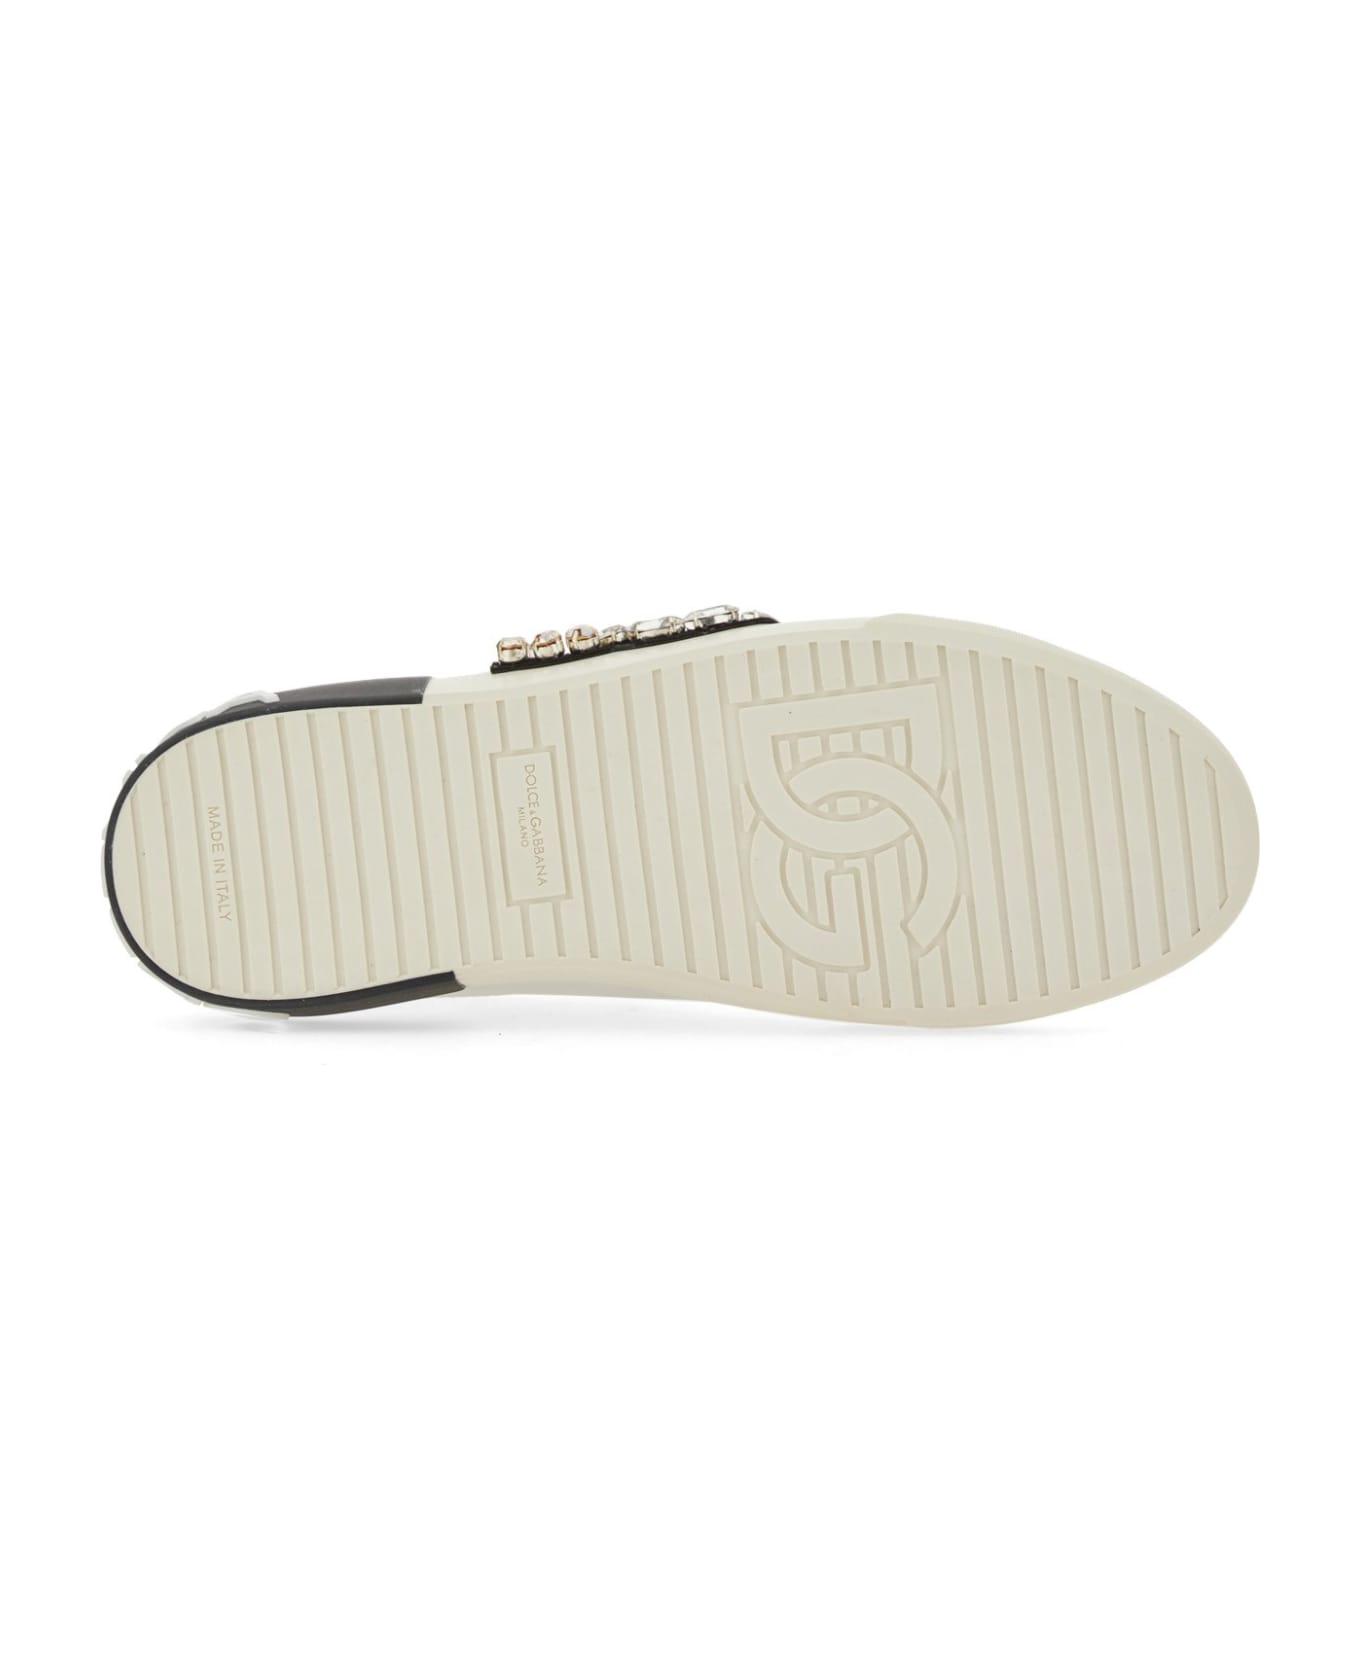 Dolce & Gabbana Portofino Vintage Sneakers - White / Gold スニーカー